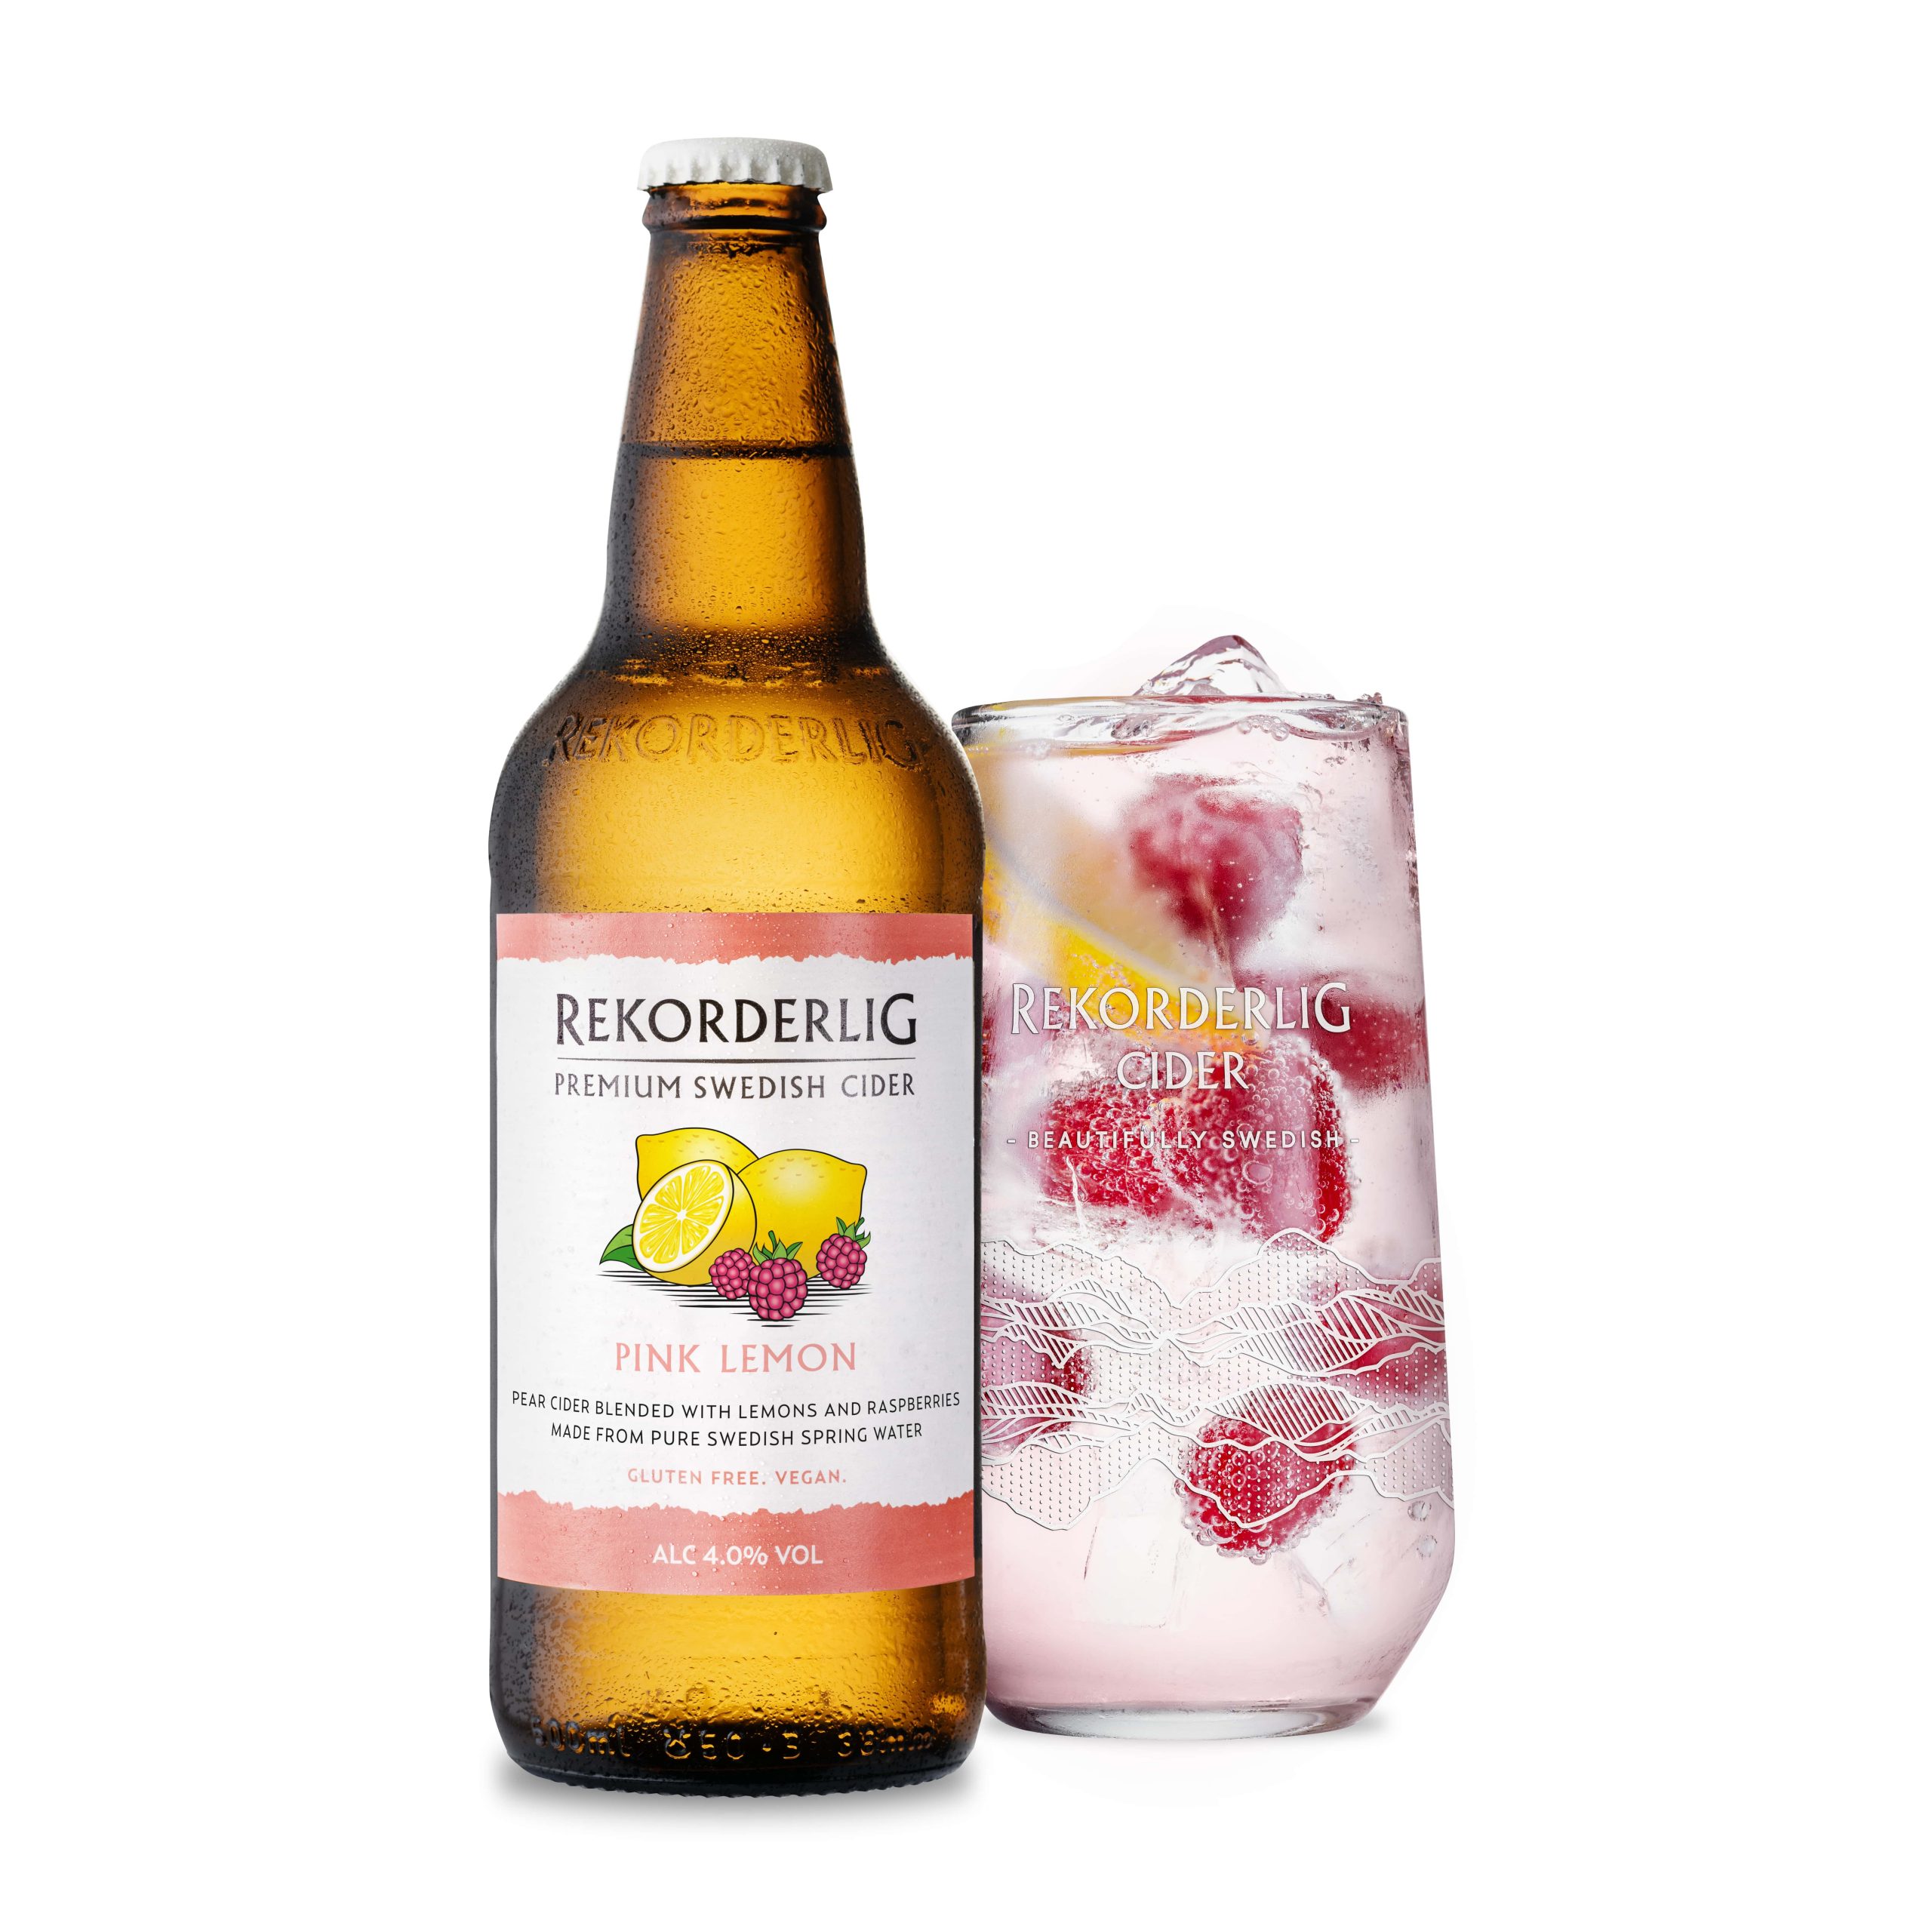 Rekorderlig boosts range with new Pink Lemon Cider